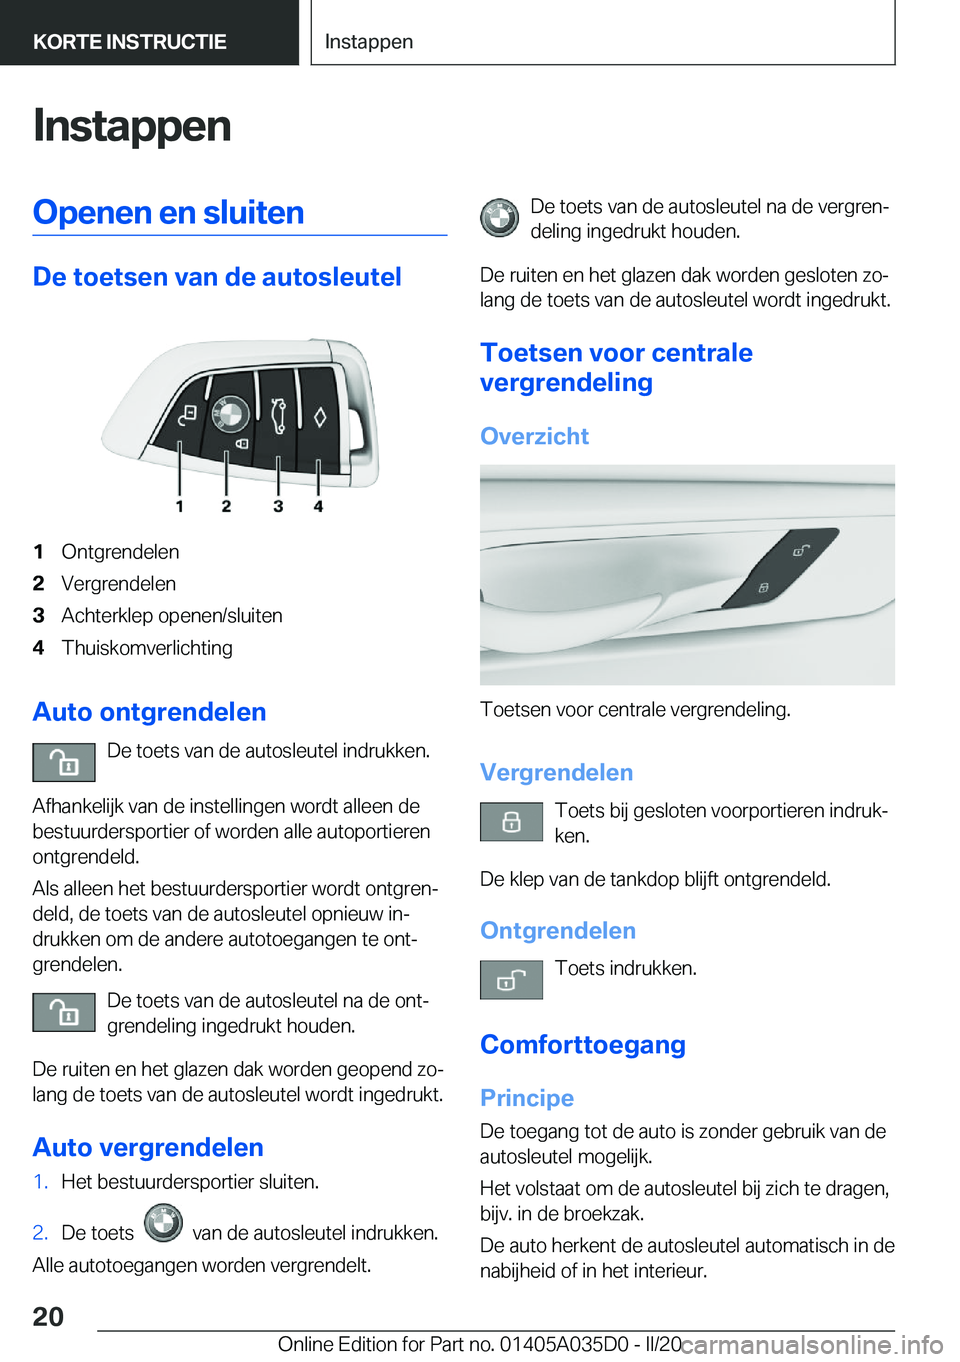 BMW X4 2020  Instructieboekjes (in Dutch) �I�n�s�t�a�p�p�e�n�O�p�e�n�e�n��e�n��s�l�u�i�t�e�n
�D�e��t�o�e�t�s�e�n��v�a�n��d�e��a�u�t�o�s�l�e�u�t�e�l
�1�O�n�t�g�r�e�n�d�e�l�e�n�2�V�e�r�g�r�e�n�d�e�l�e�n�3�A�c�h�t�e�r�k�l�e�p��o�p�e�n�e�n